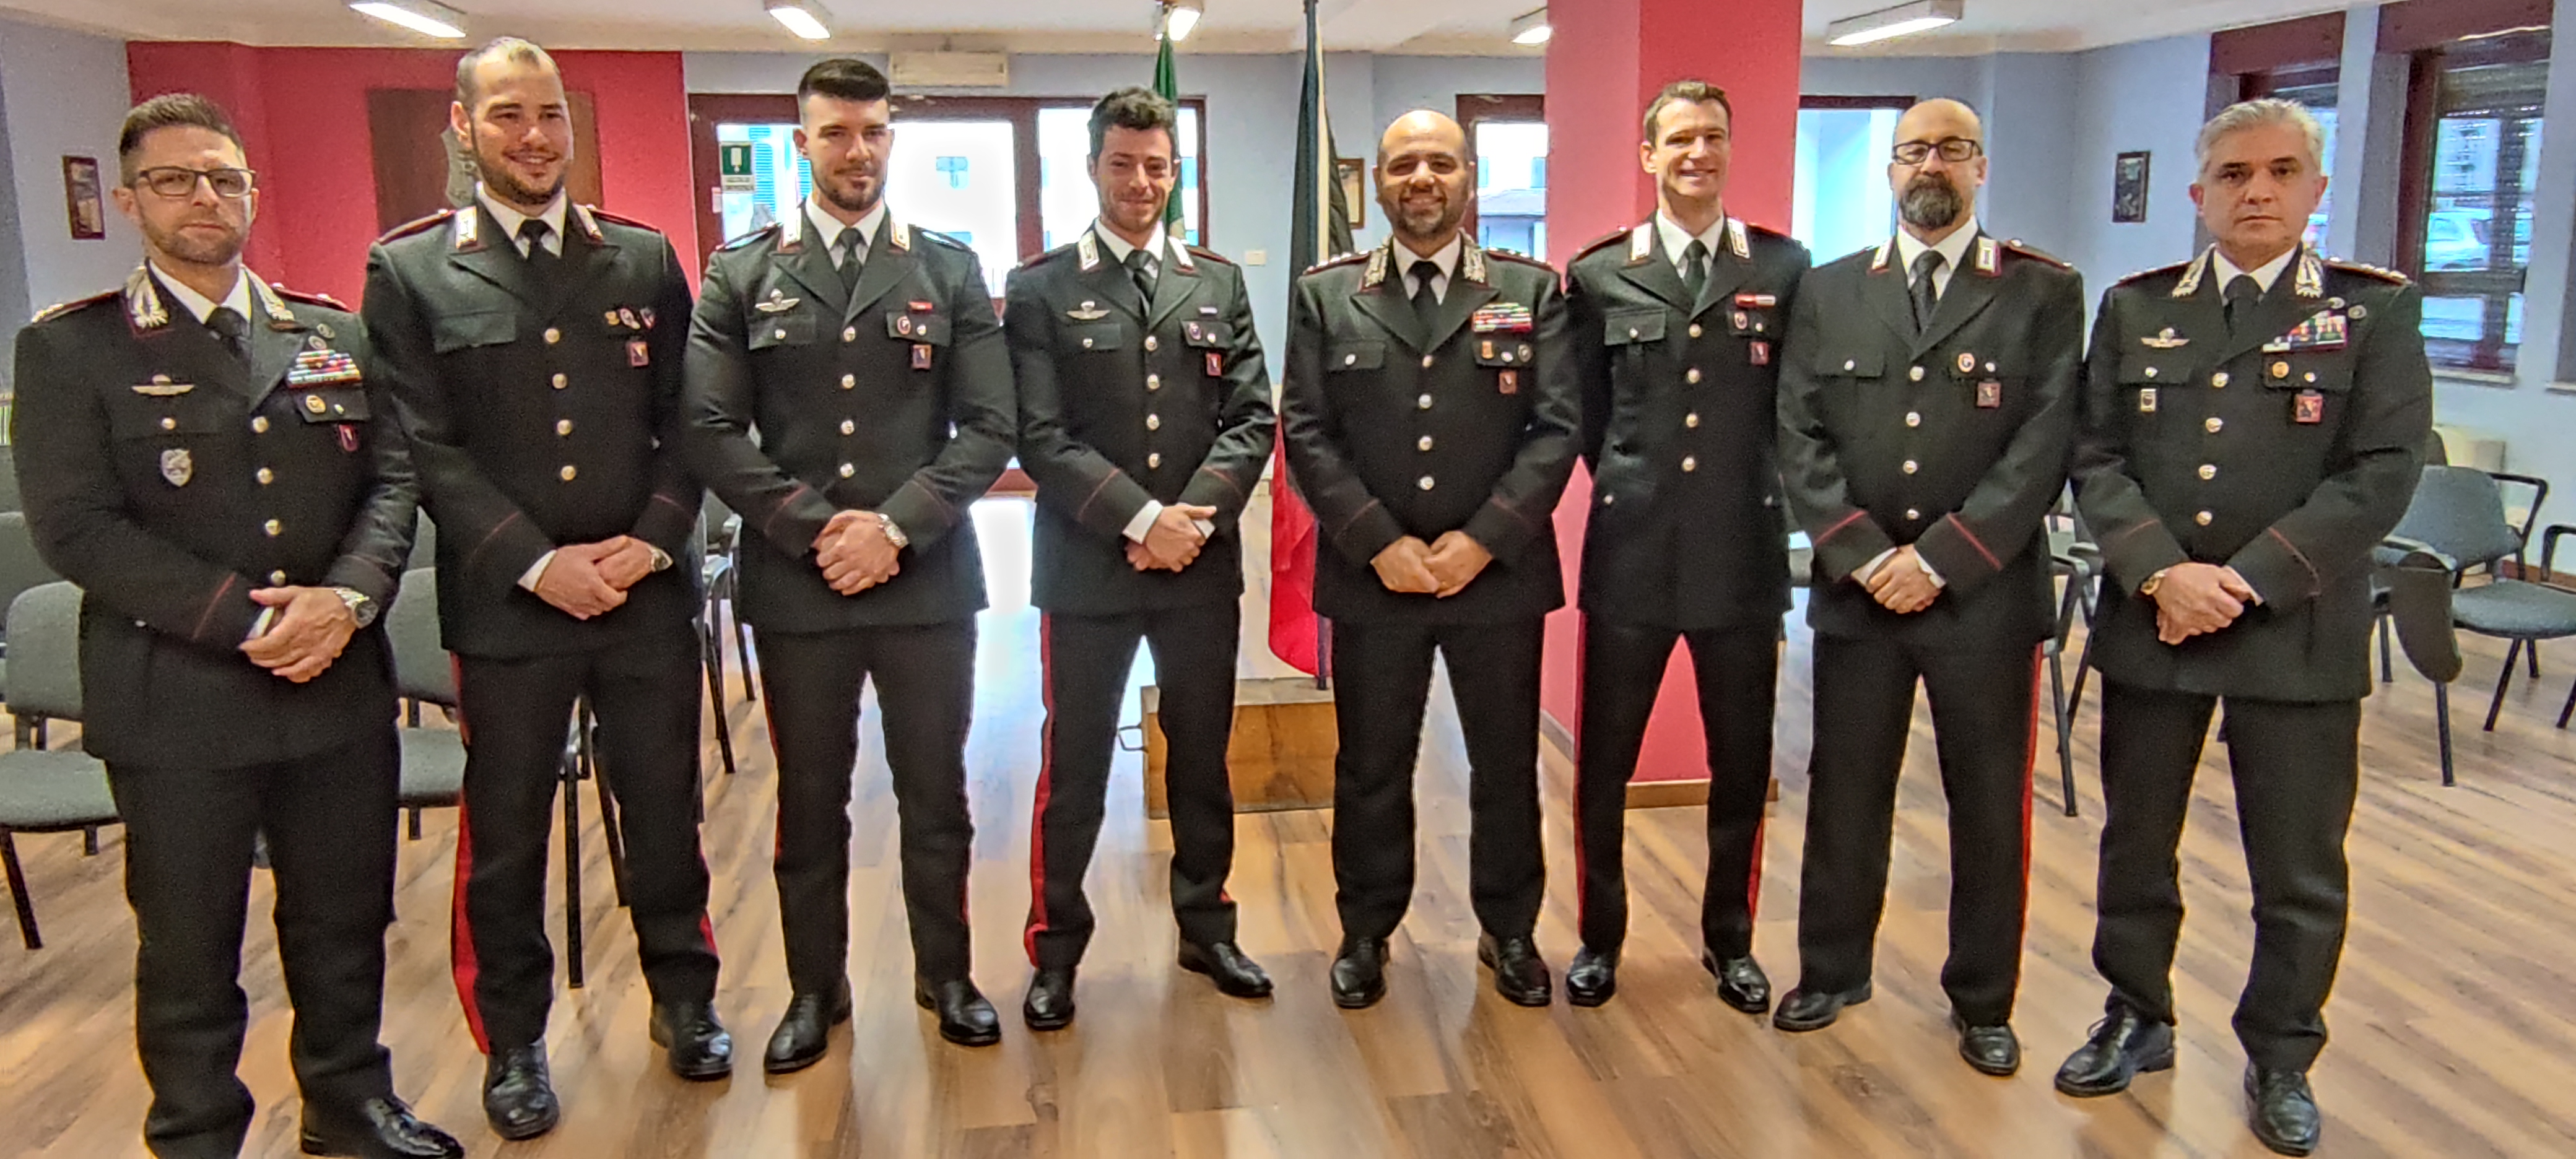 Carabinieri, Valle d’Aosta: 5 sottufficiali promossi a maresciallo ordinario